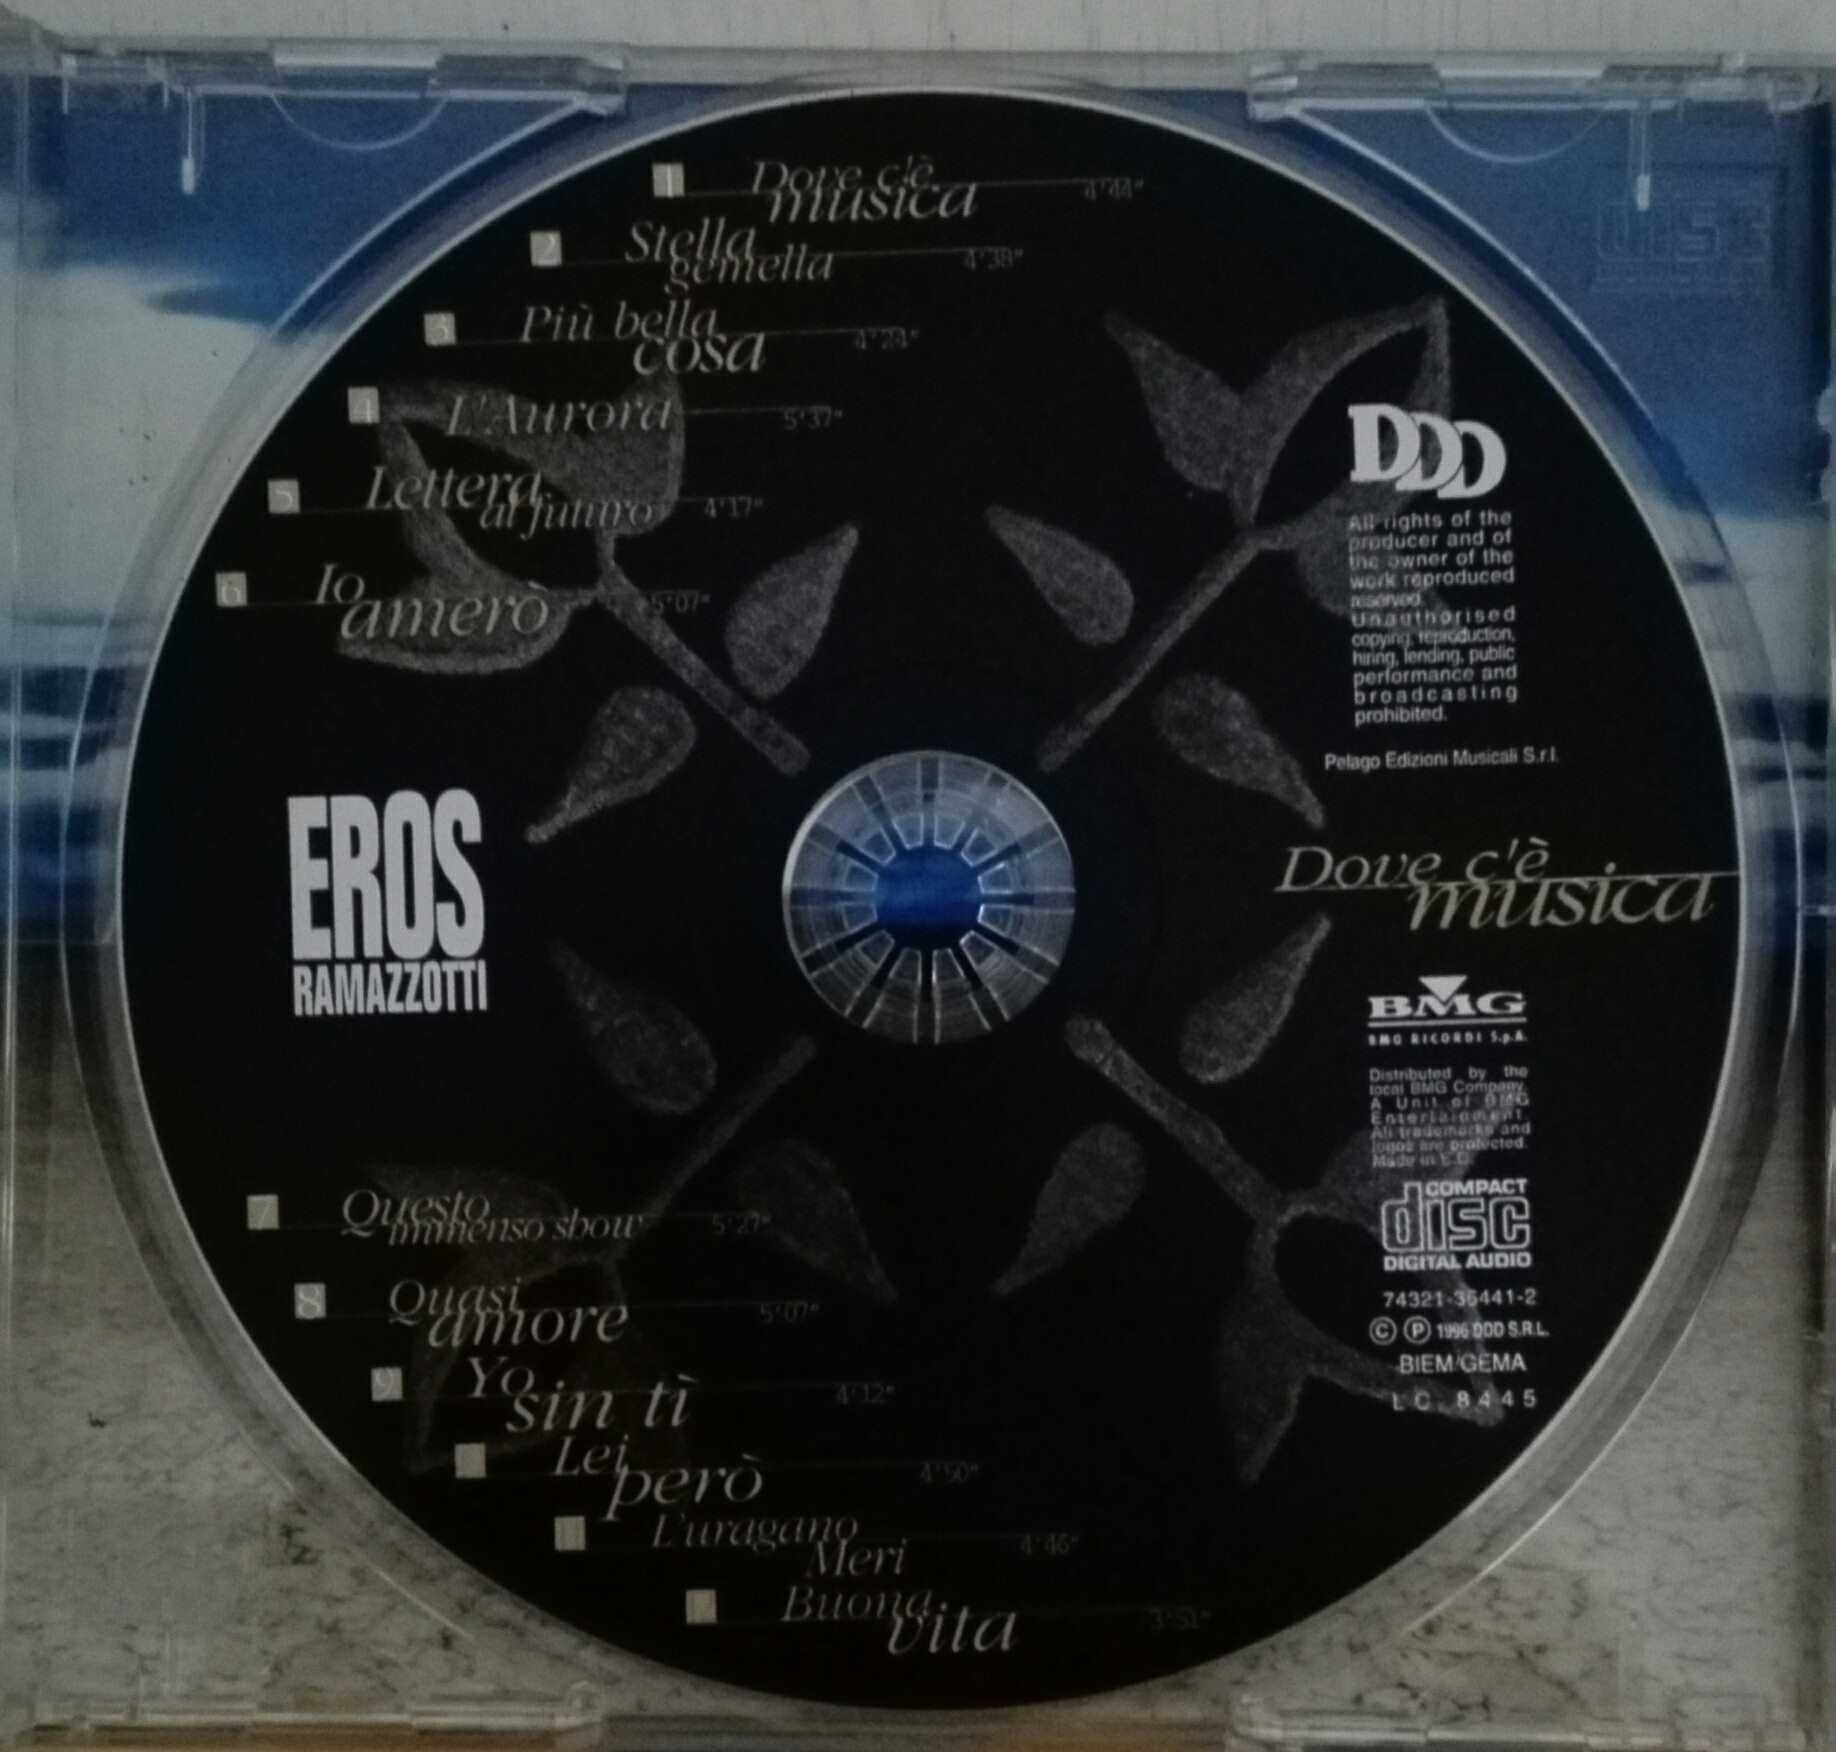 CD - Eros Ramazzotti - portes incluídos